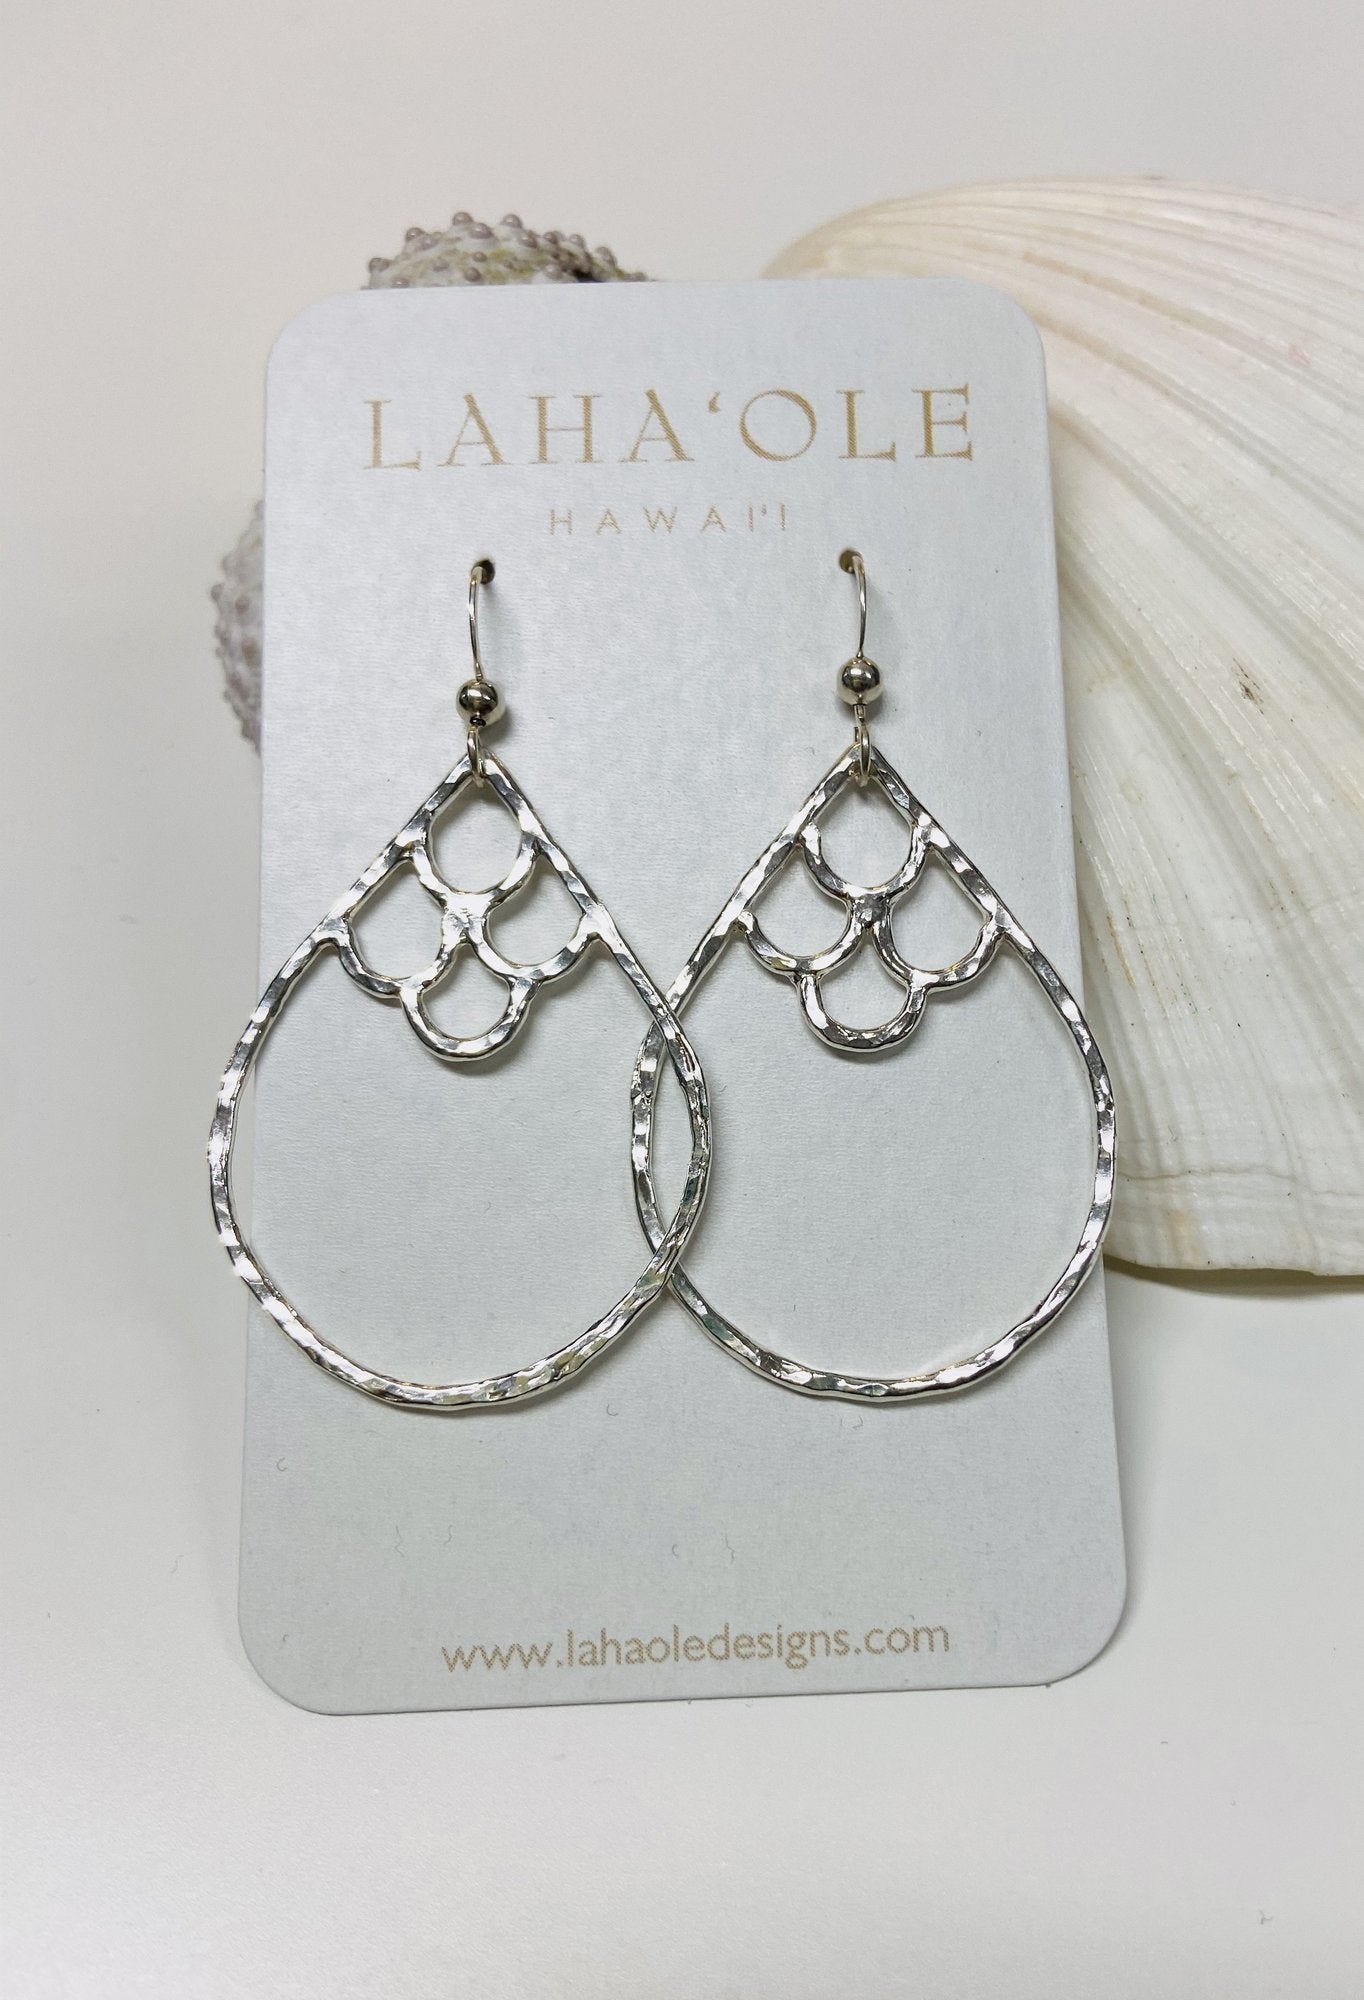 Pop-Up Mākeke - Laha'ole Designs - Kai Nalu 'Elua Sterling Silver Earrings - Medium - Front View